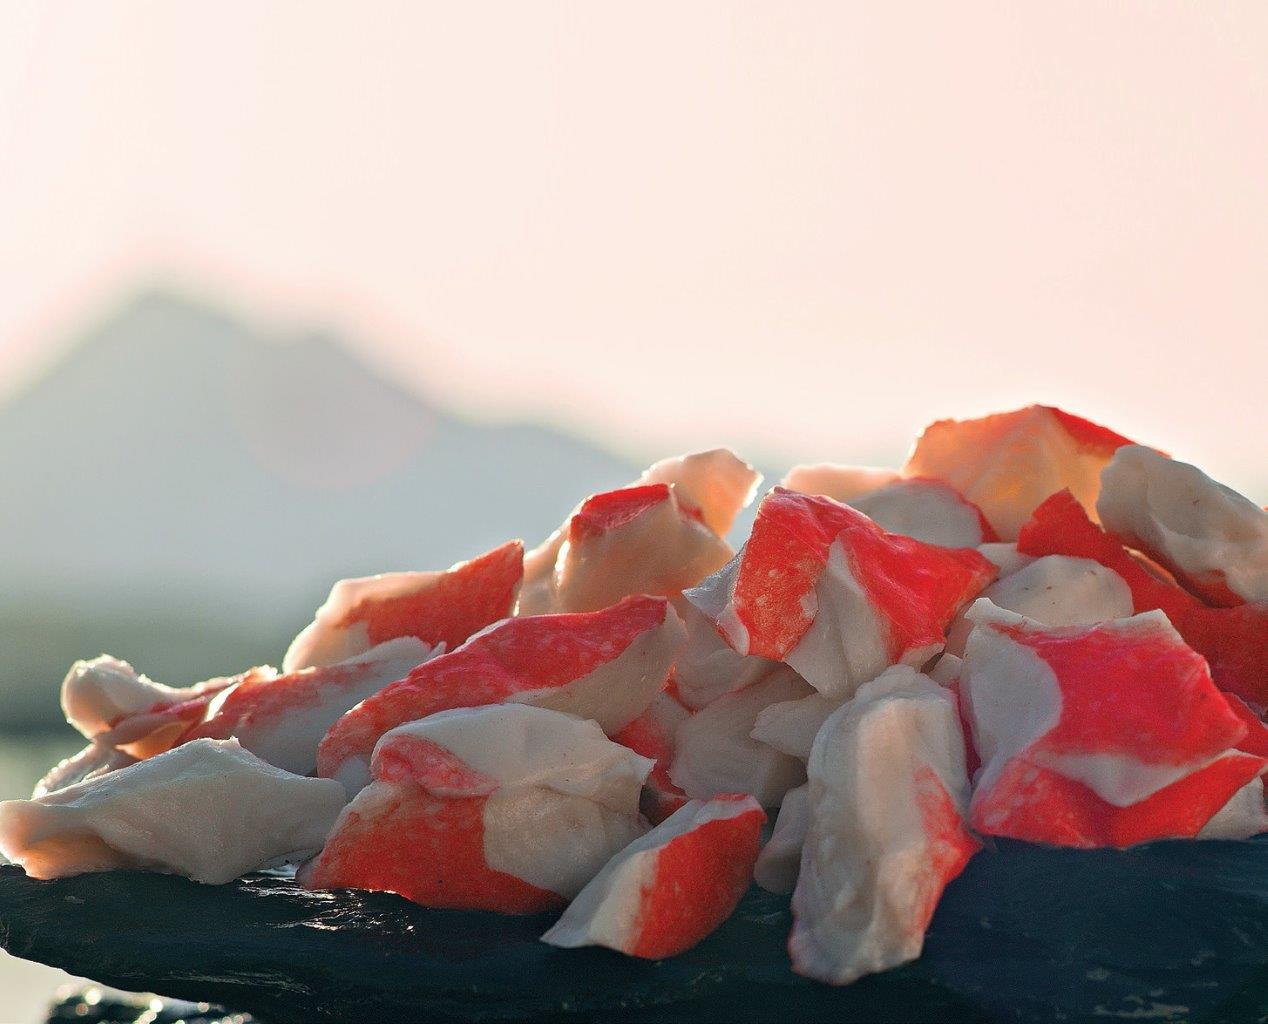 Jūrų gėrybių surimis yra populiarus salotų, sumuštinių ir garnyrų priedas, naudojamas daugelyje sušio baro gaminių